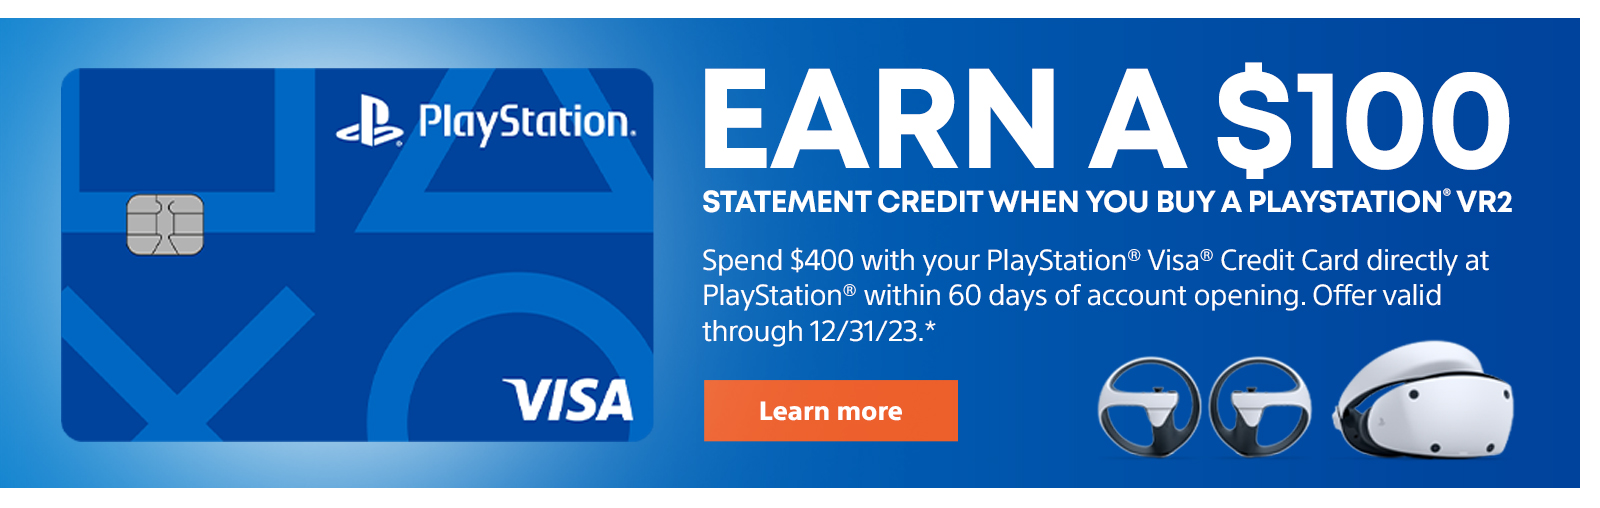 Tjäna en kredit på 100 $ när du köper en PlayStation VR2. Använd PlayStation Visa -kreditkortet för att spendera $ 400 direkt på PlayStation inom 60 dagar efter att kontotöppningen. Erbjudande giltigt till och med 12/31/23